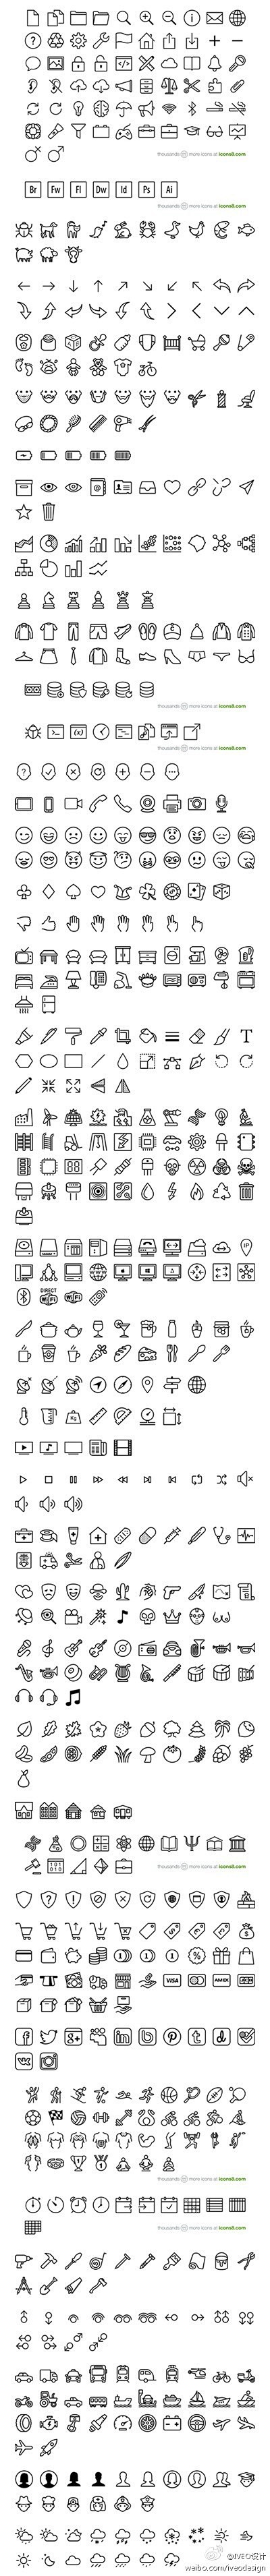 【700+ iOS 7 Icons - ...